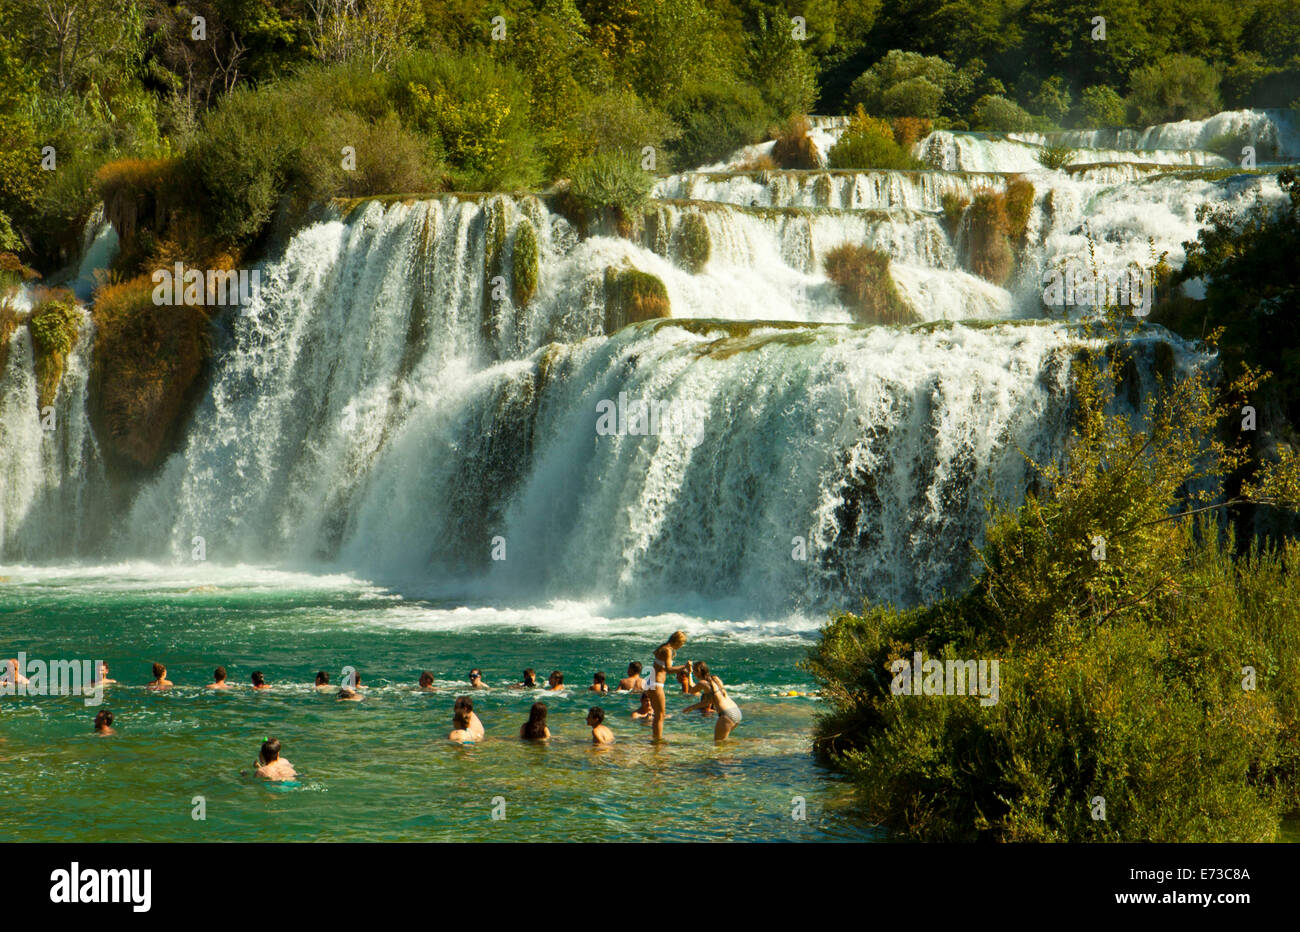 KRKA,CROATIE - août 2014. Les touristes baignade sous les cascades de Krka dans le parc national de Krka, grande attraction près de Sibenik. Banque D'Images